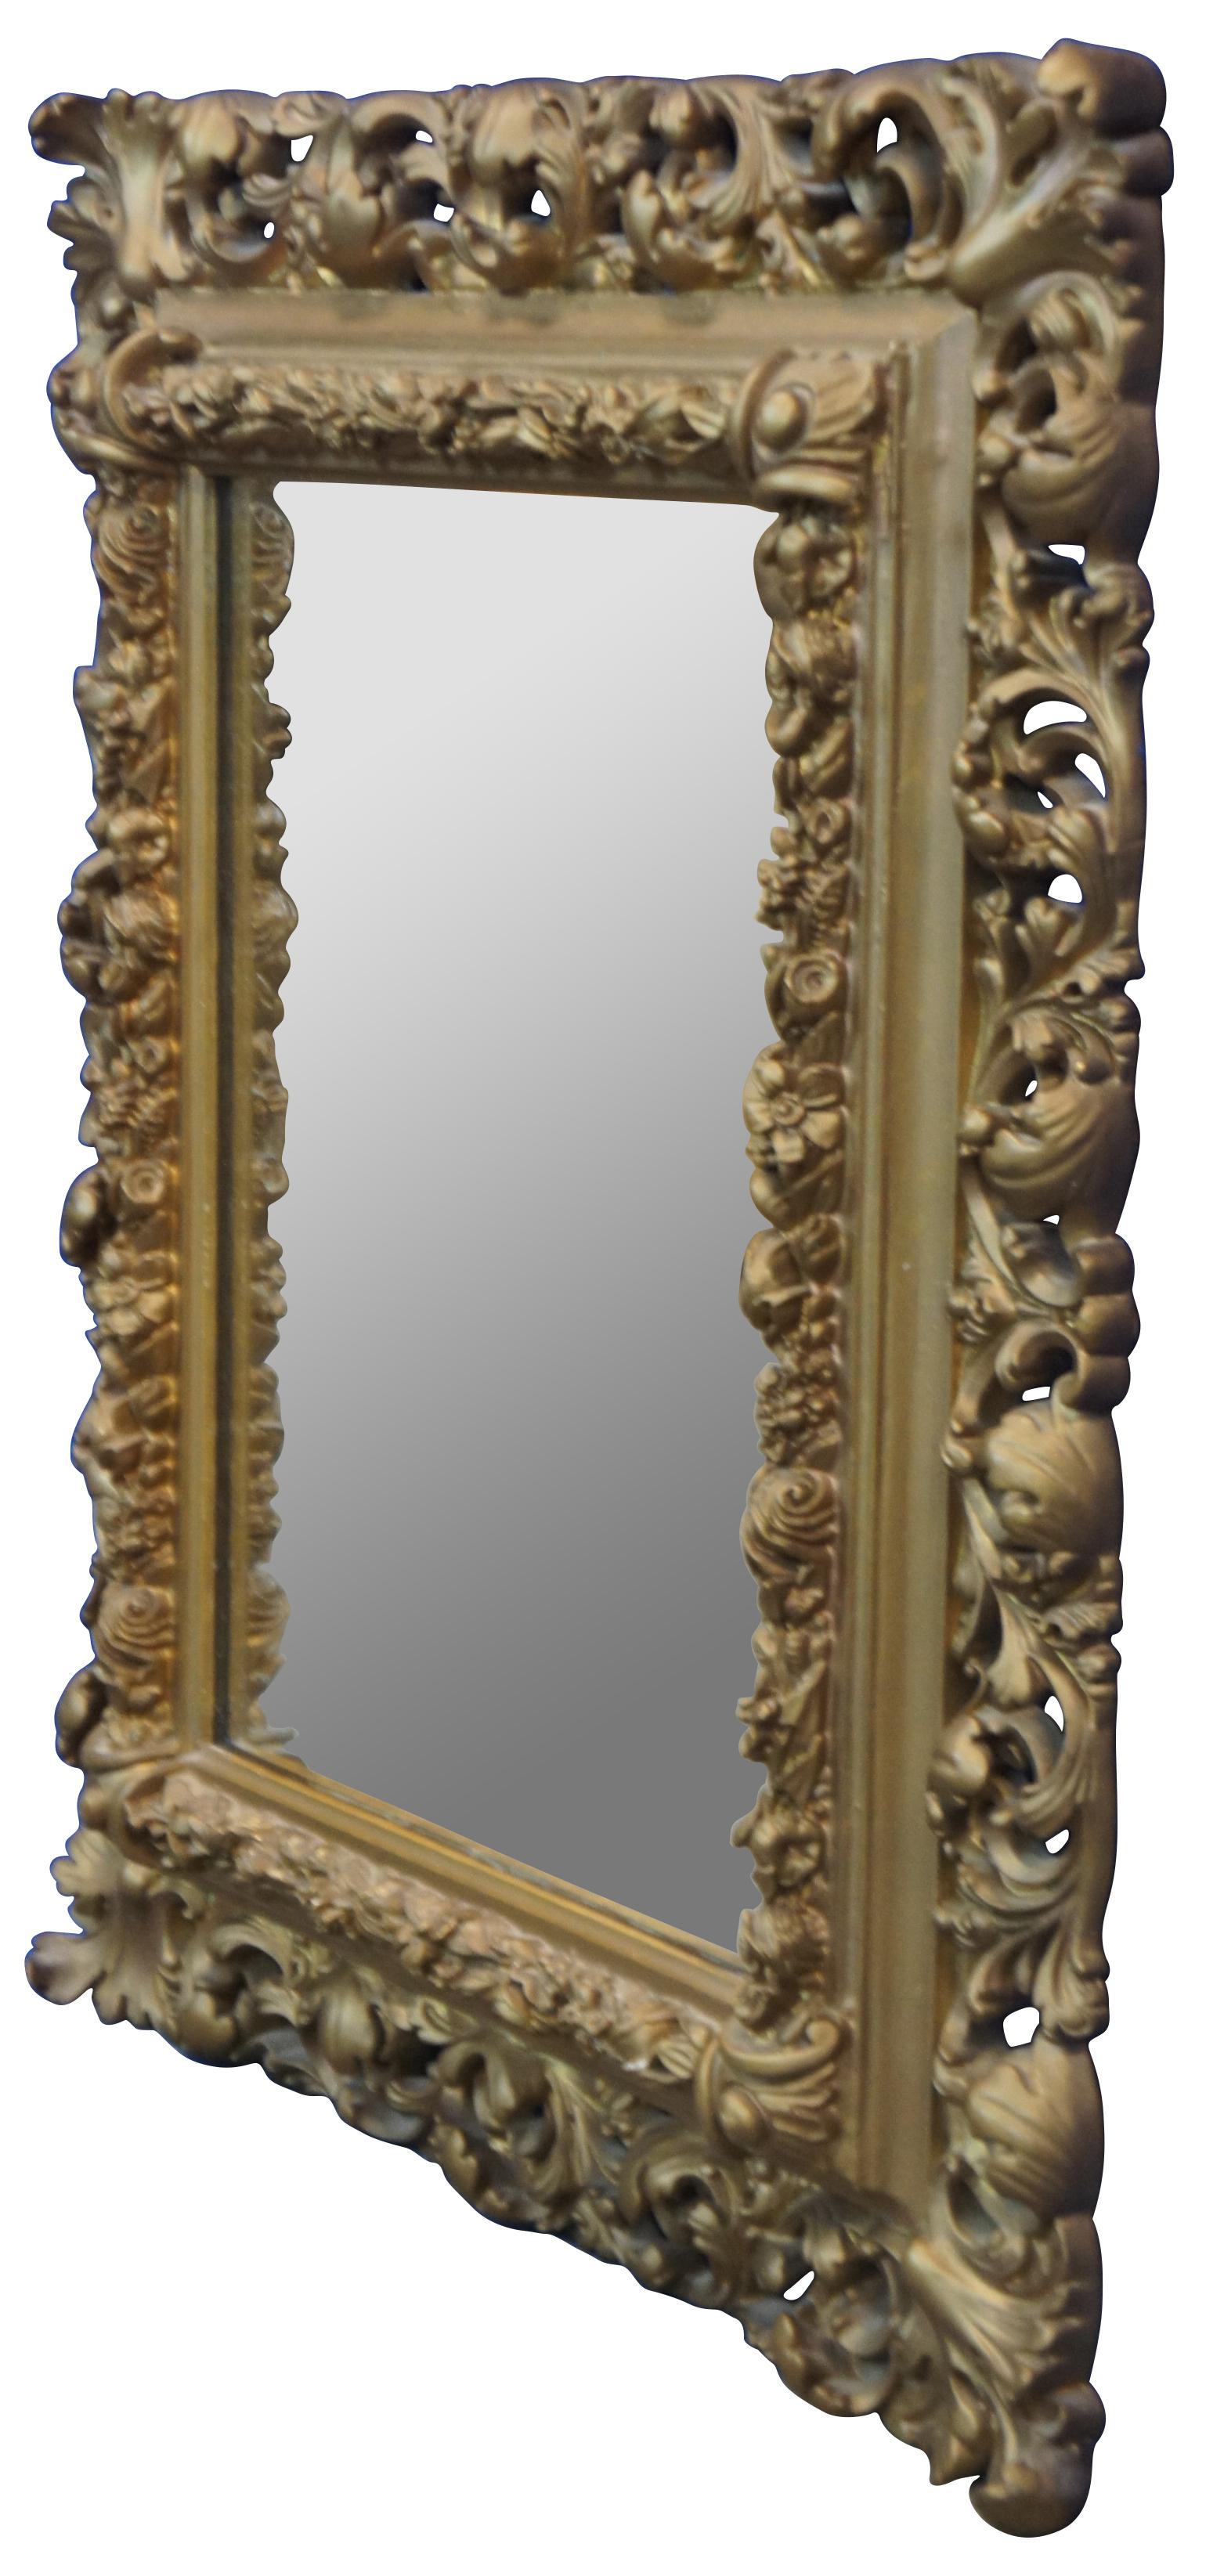 Paire de miroirs anciens baroques / rococo français dorés de forme rectangulaire avec des cadres moulés décorés de petites fleurs percées ou réticulées et de grandes feuilles tourbillonnantes.

Mesures : 19.5